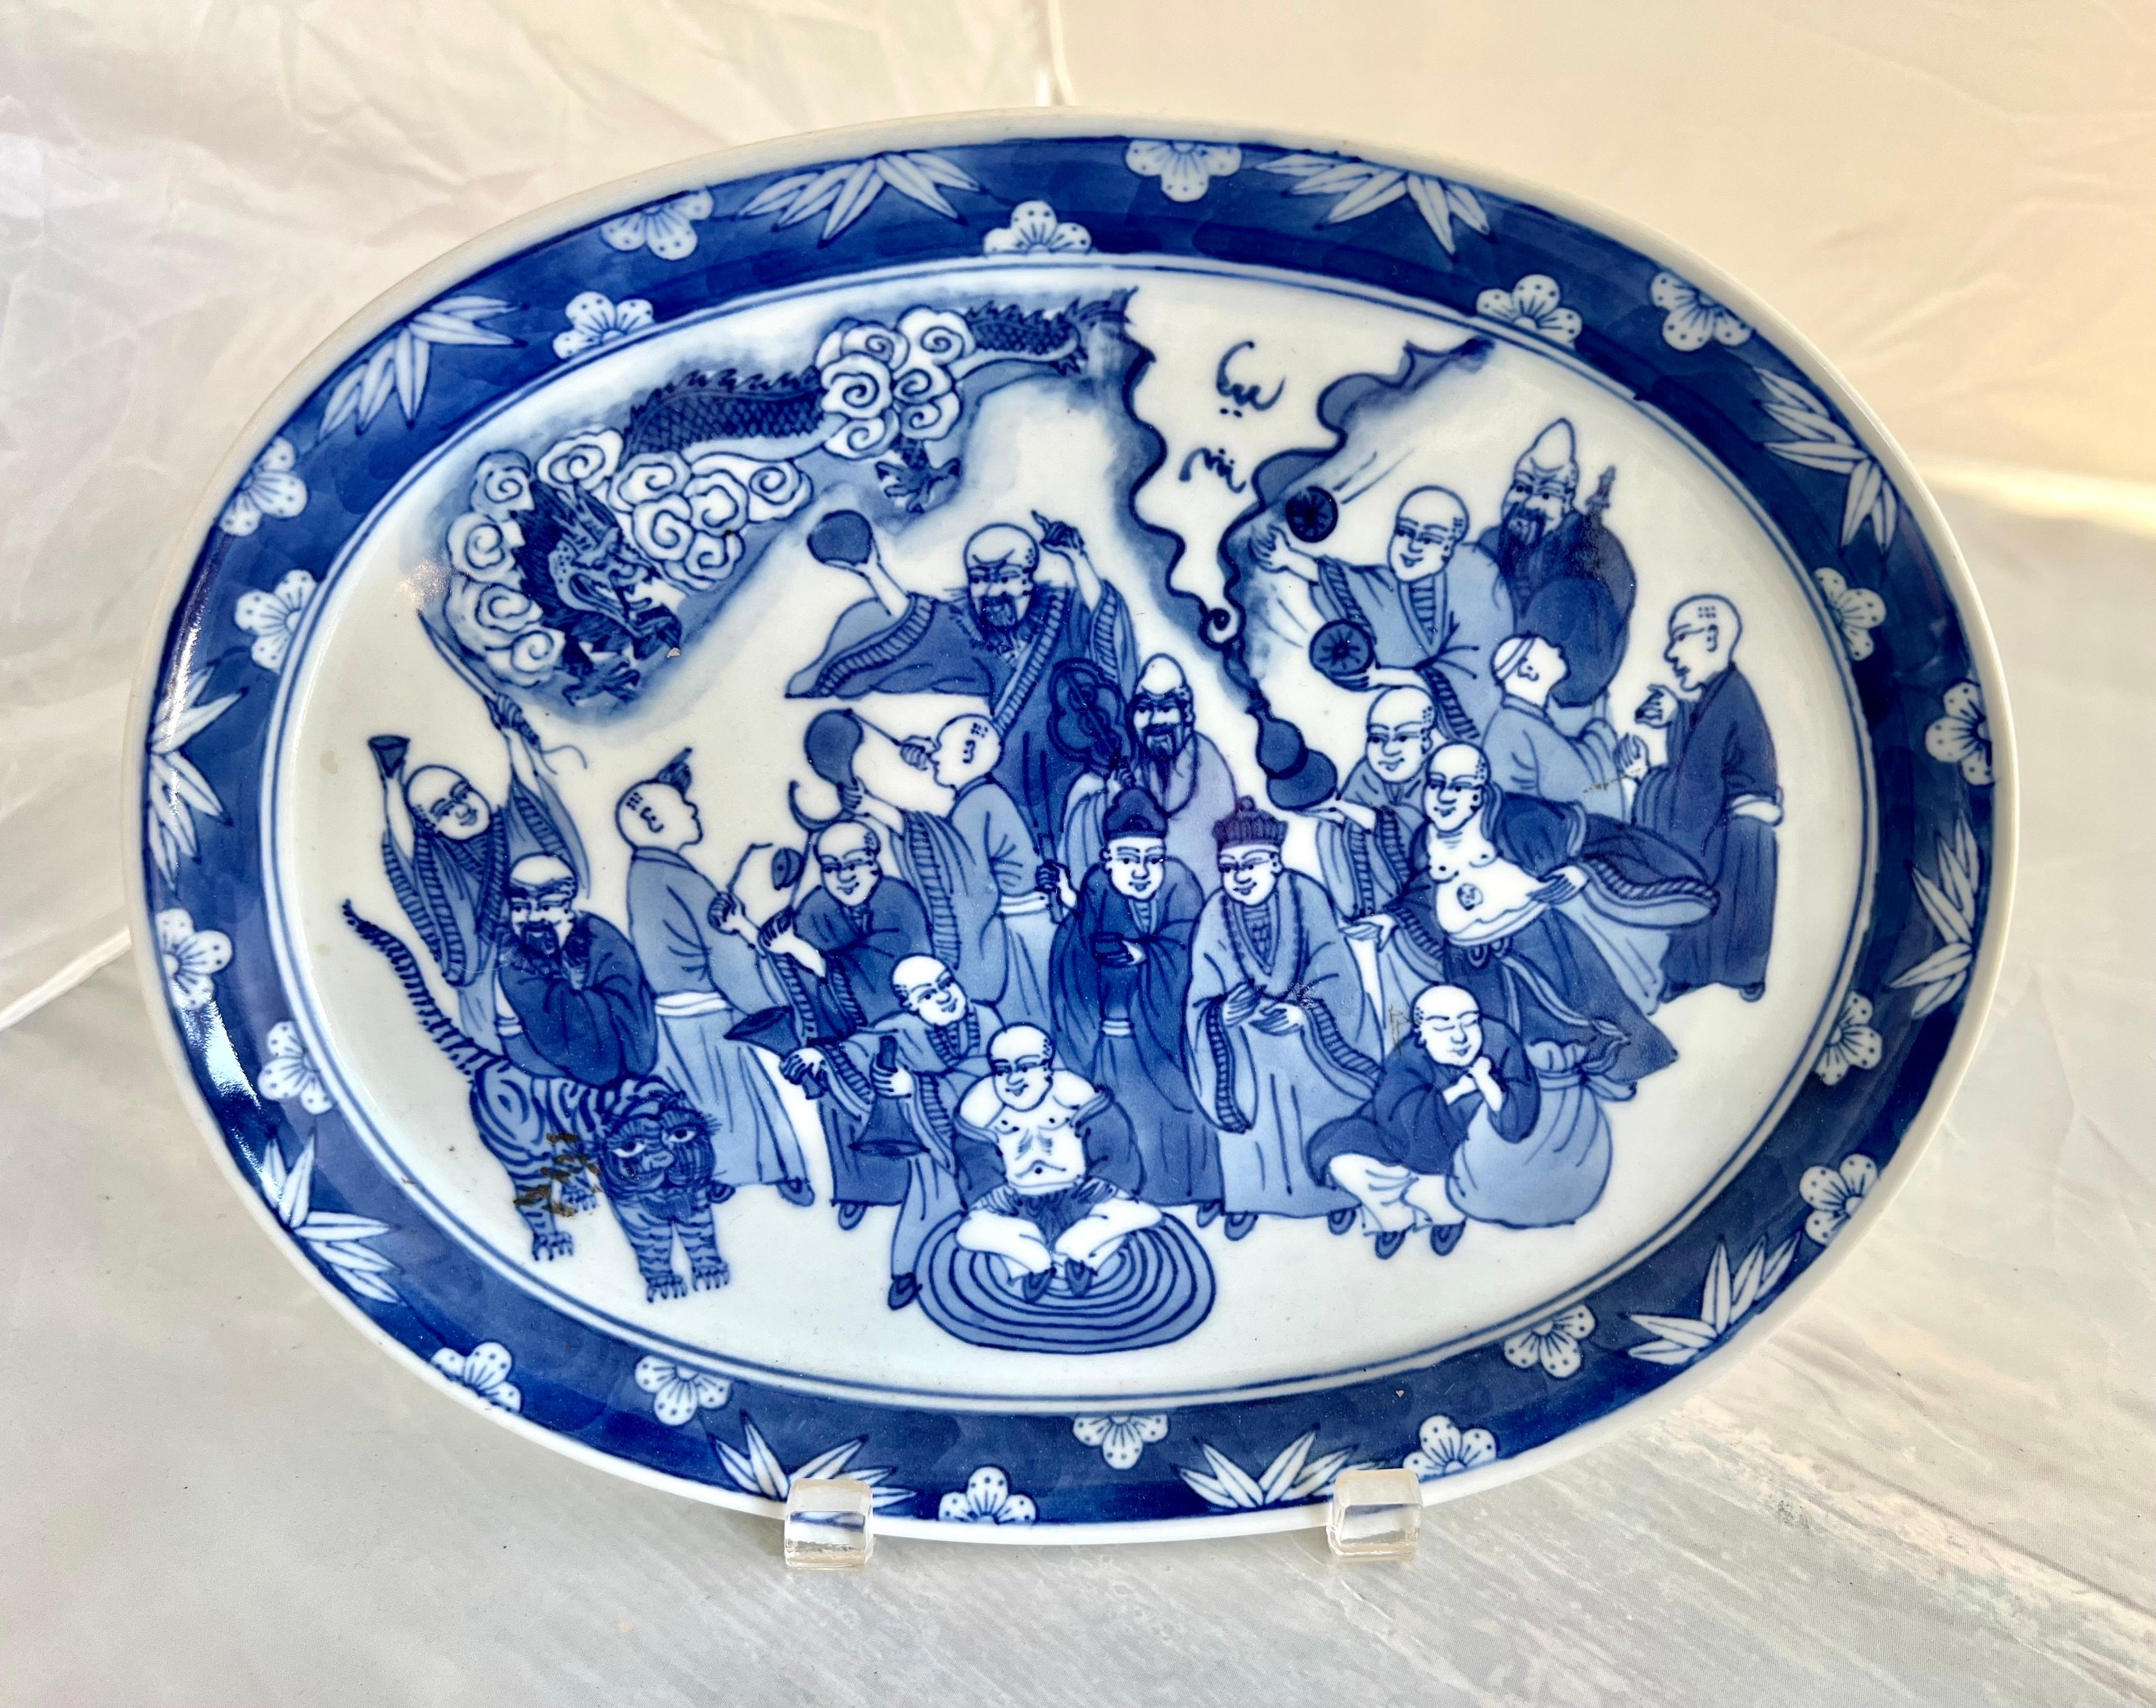 Le plat ovale bleu et blanc d'exportation chinoise avec des représentations de sages, d'un tigre et d'un dragon reflète probablement le symbolisme et les récits traditionnels chinois.  La combinaison de ces éléments pourrait avoir une signification